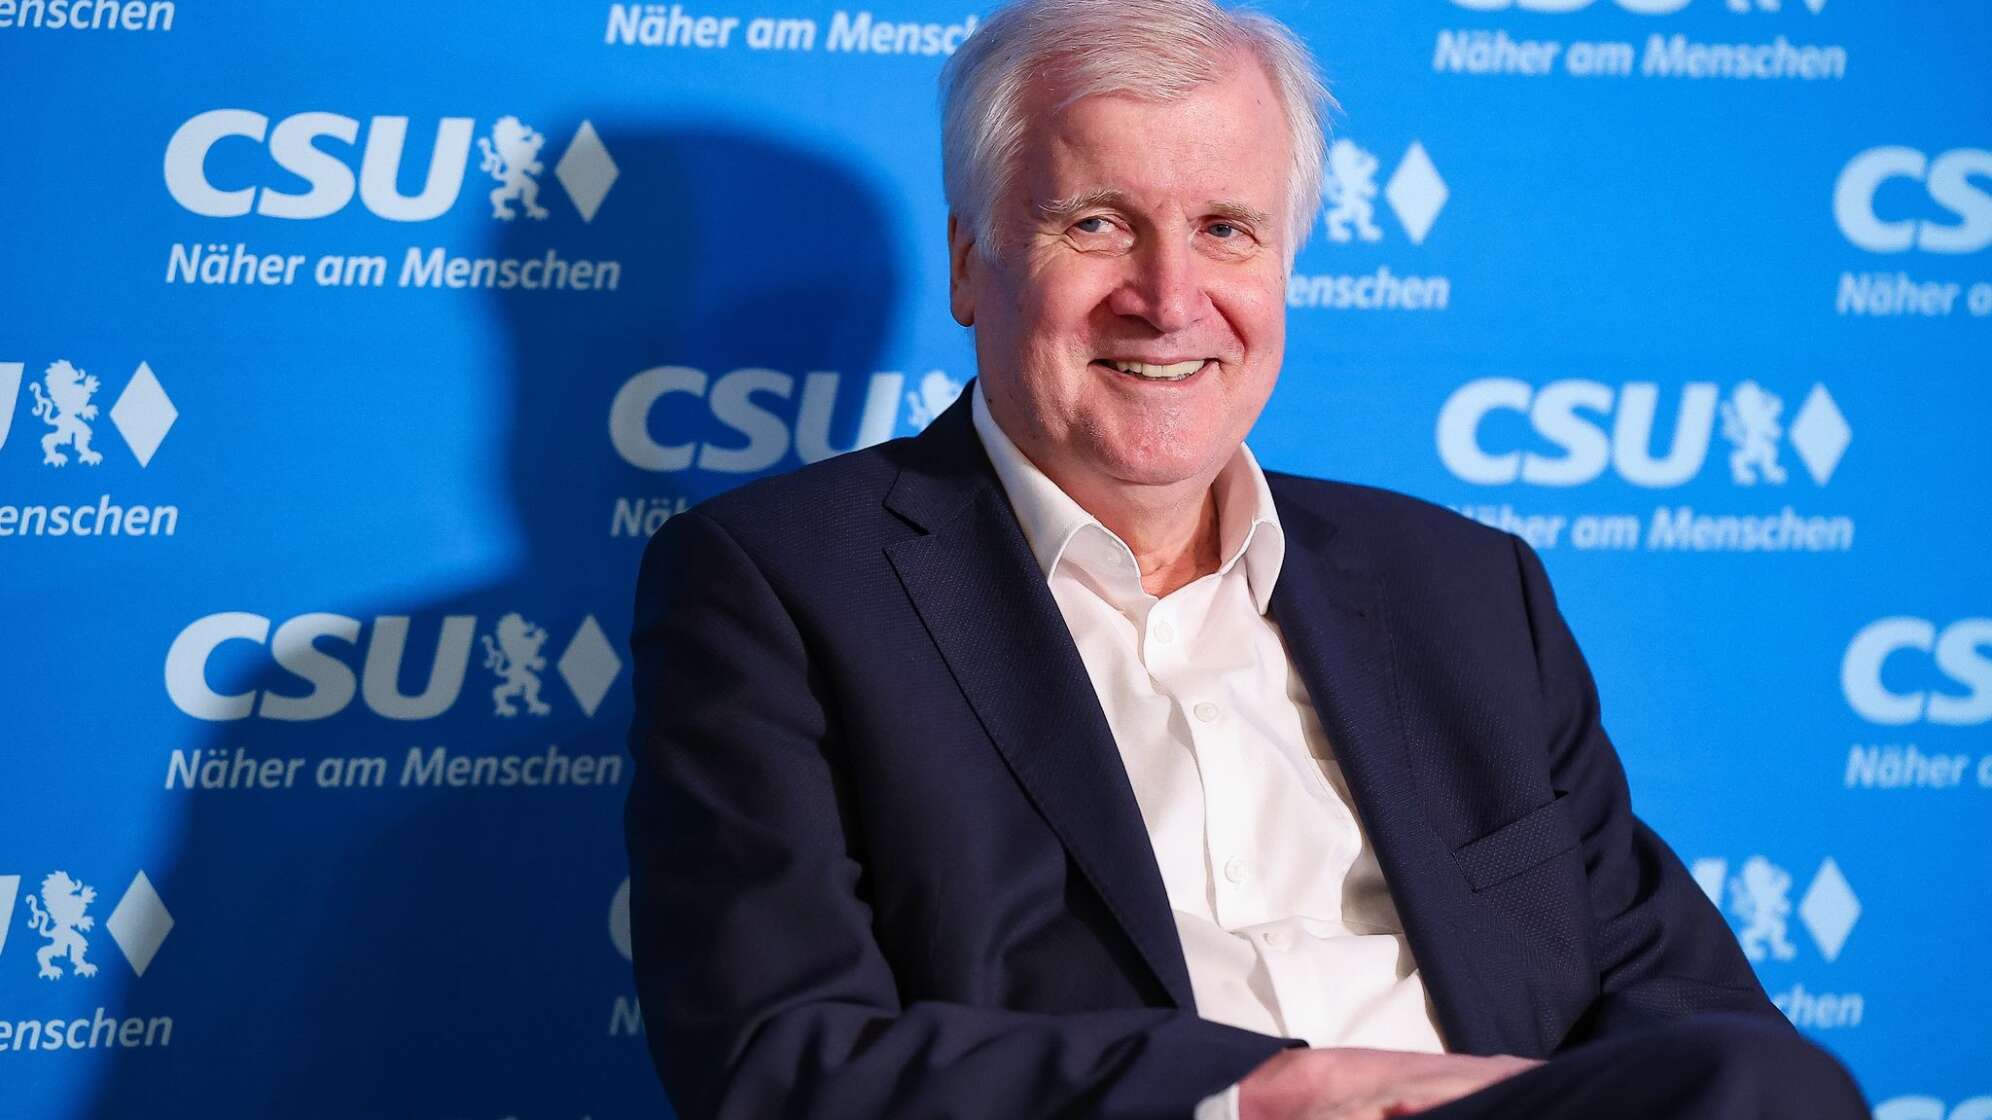 CSU-Wahlkampfveranstaltung mit Europa-Spitzenkandidat Weber